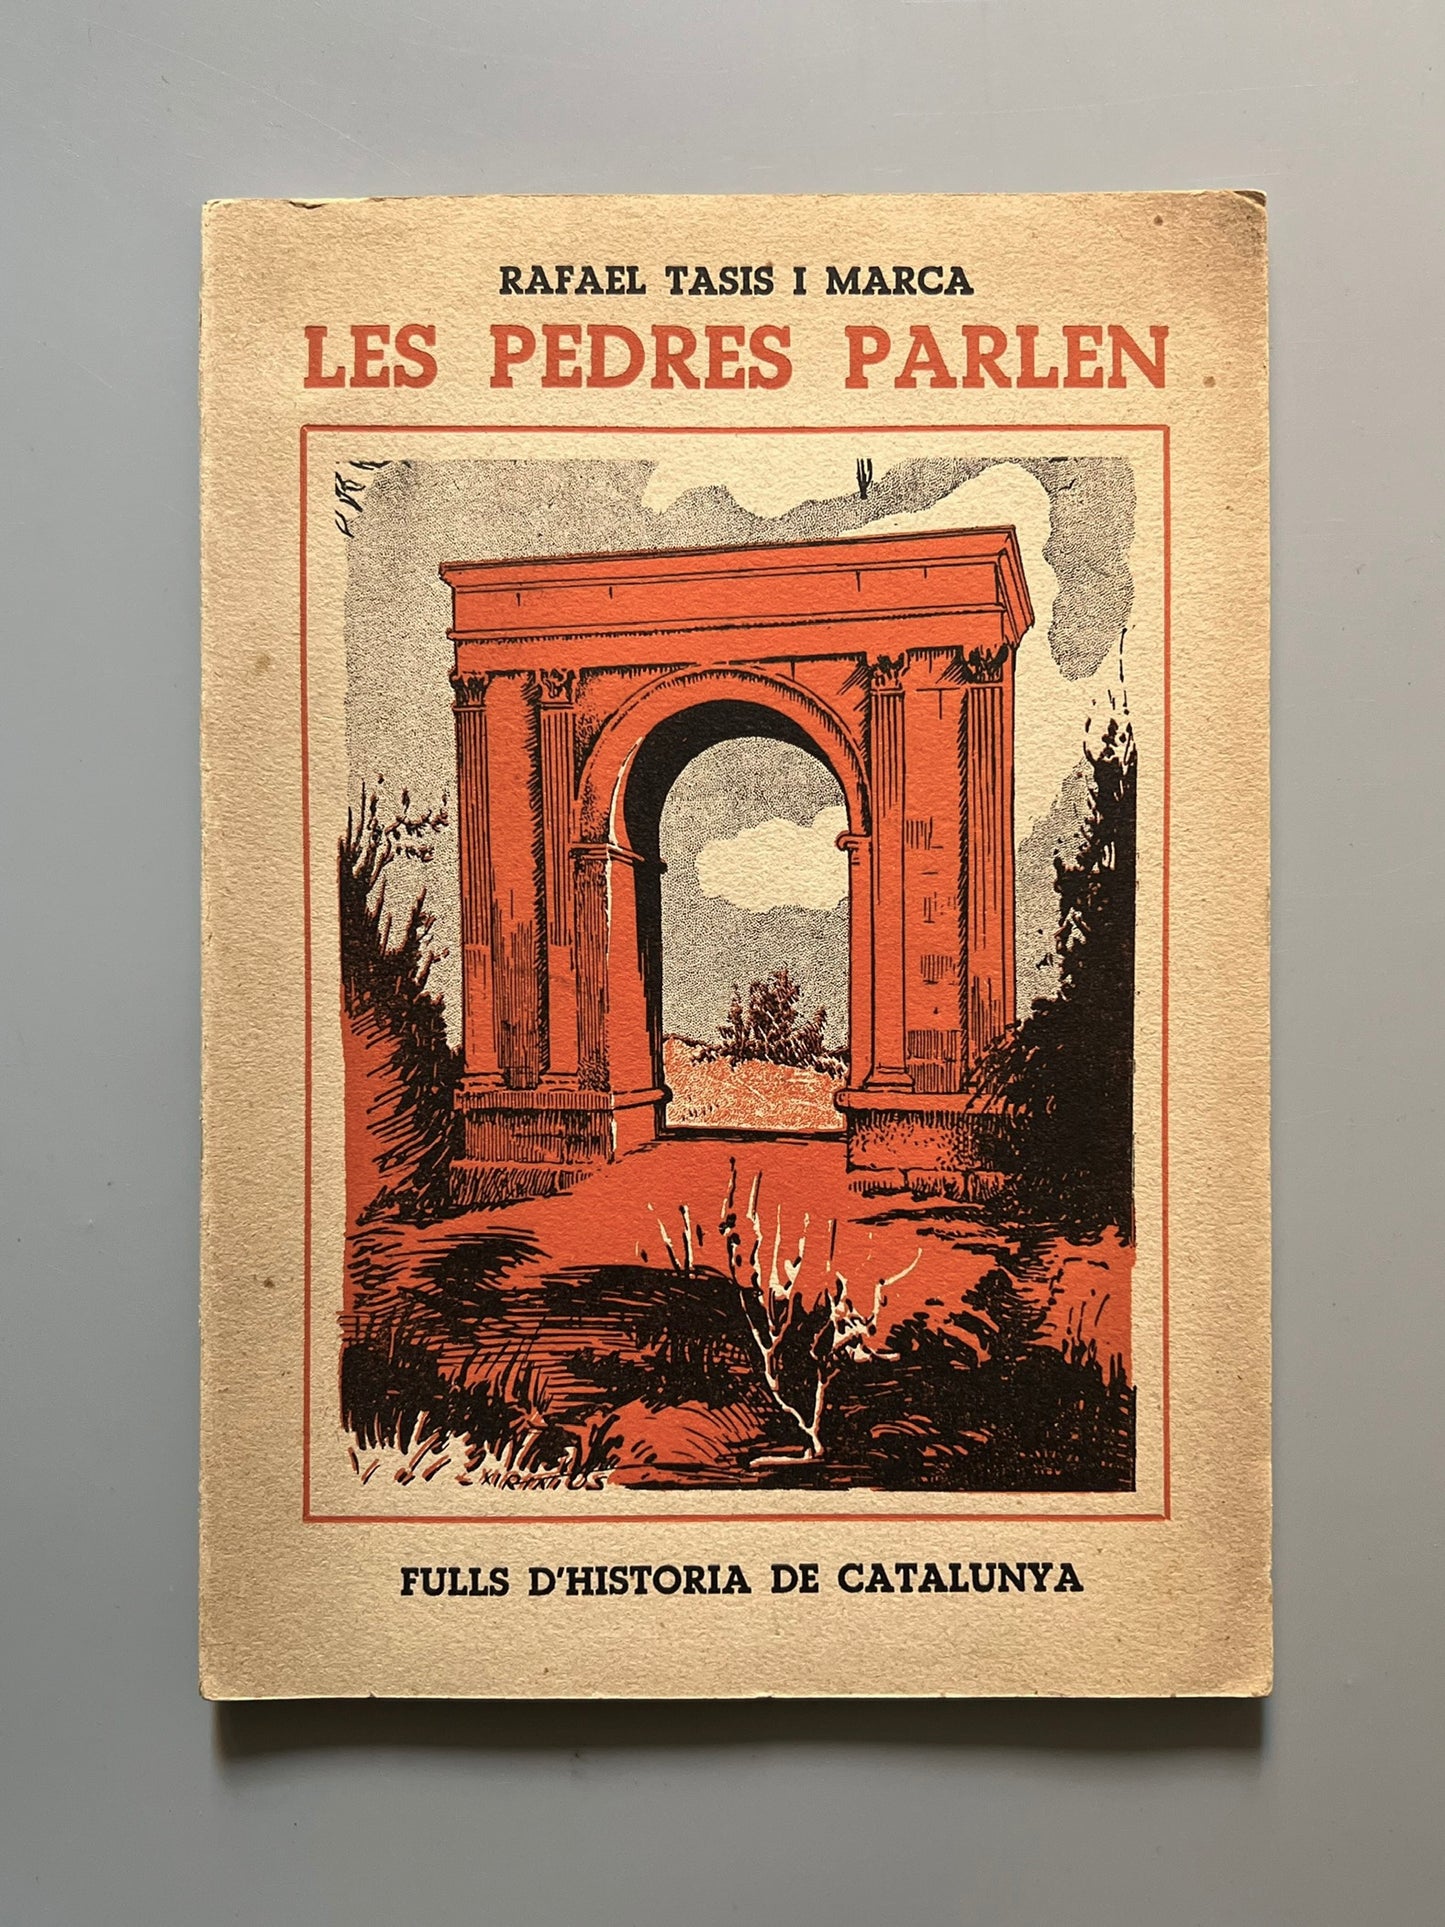 Les pedres parlen, Rafael Tasis i Marca - Comissariat de Propaganda de la Generalitat de Catalunya, 1938